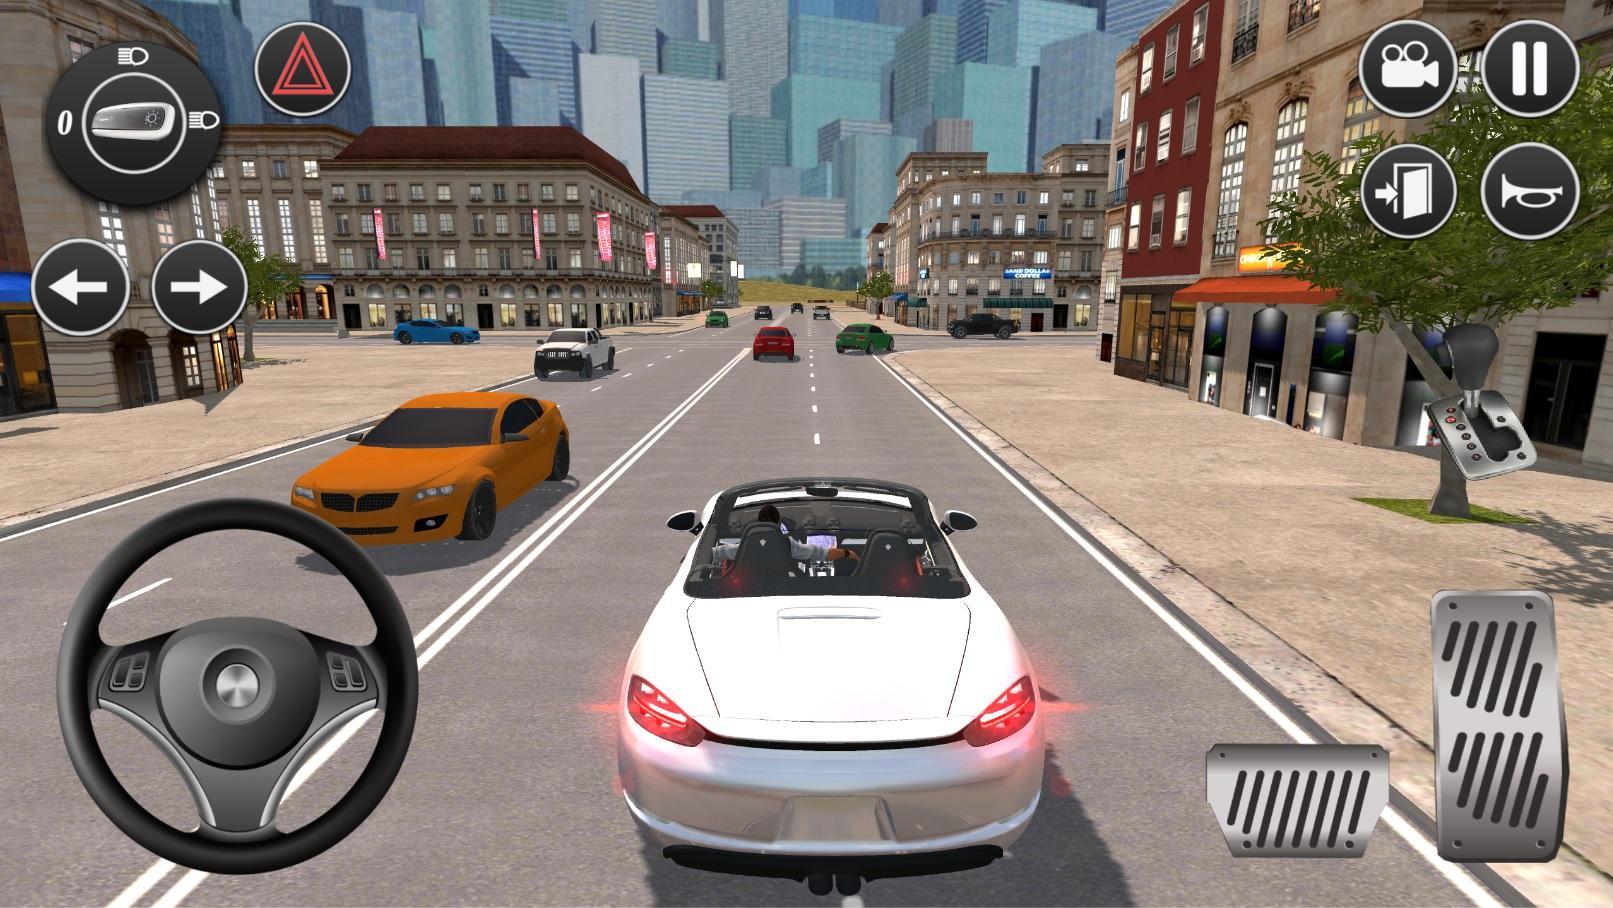 Screenshot 1 of การขับขี่รถยนต์ในเมืองอเมริกัน 